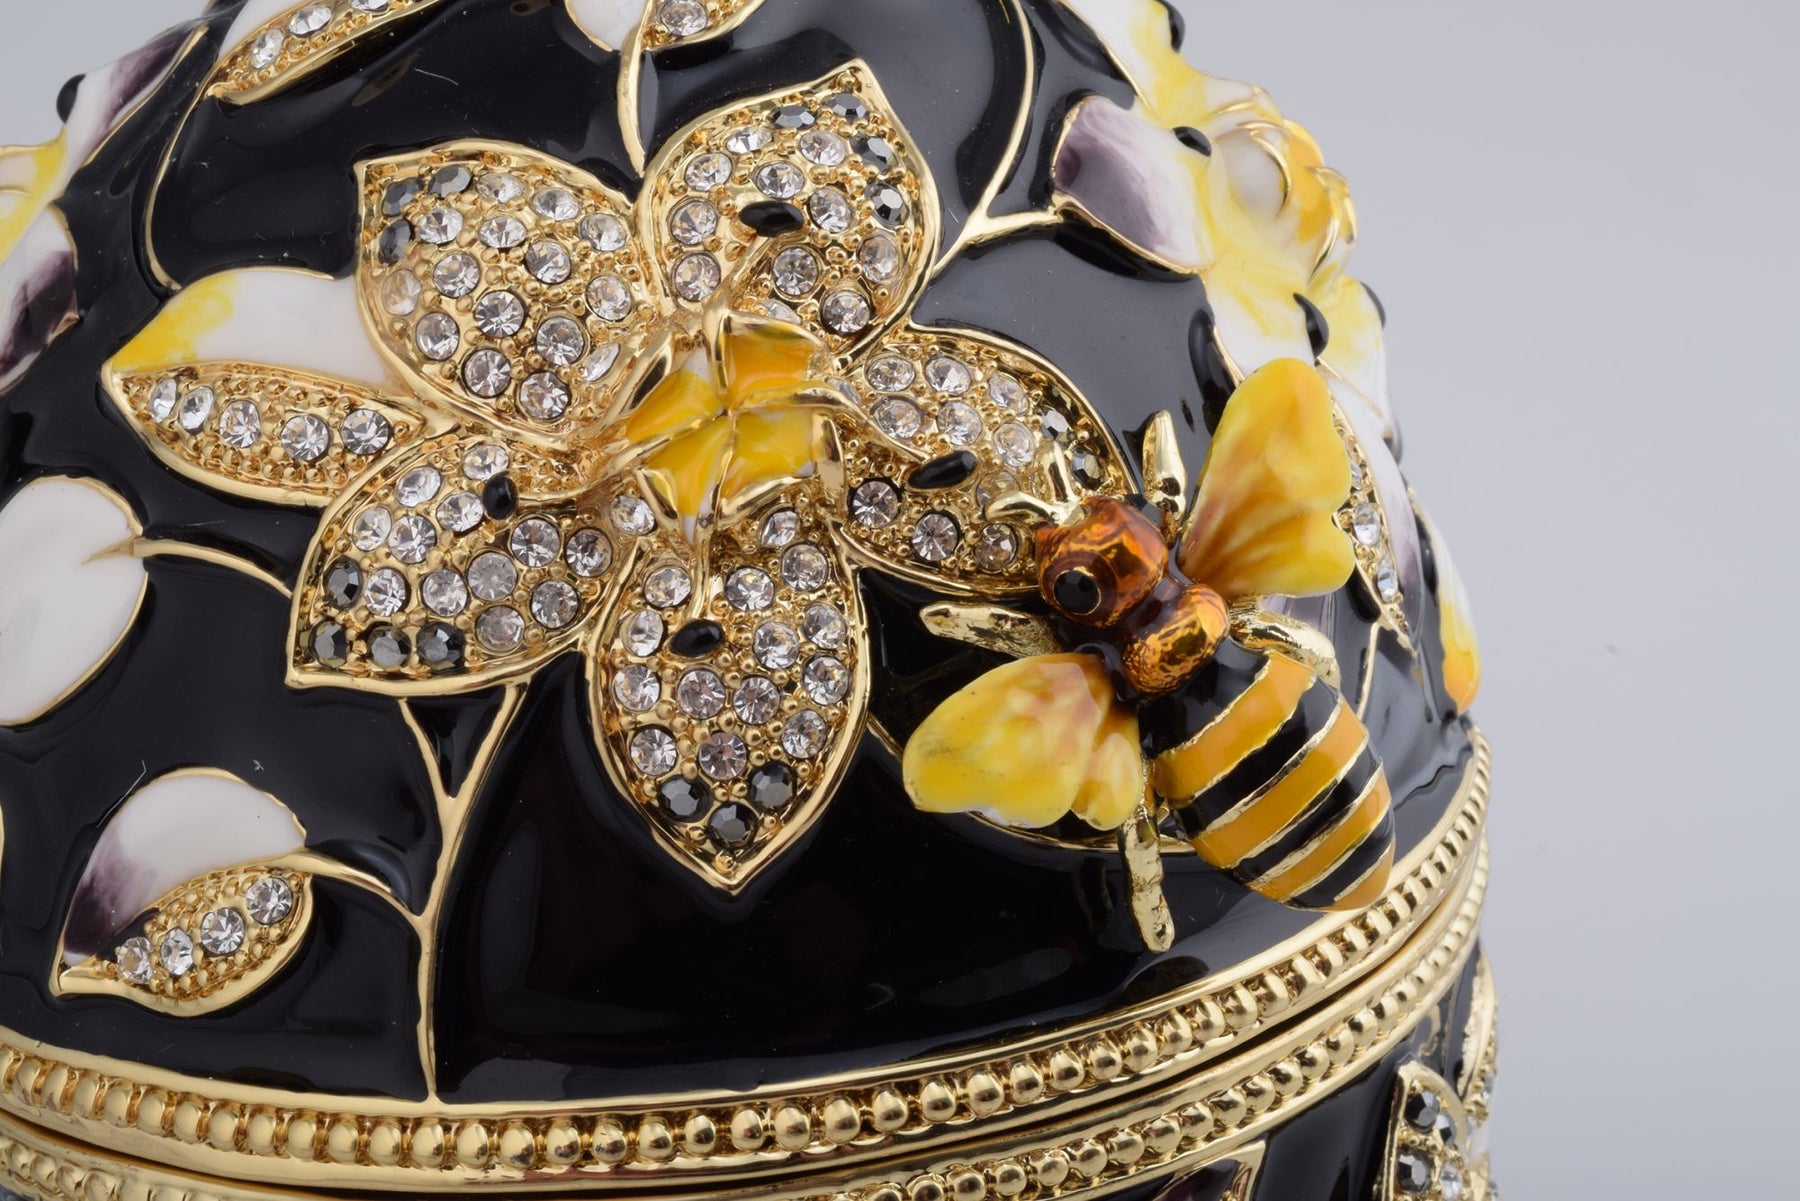 Oeuf de Fabergé noir décoré d'abeilles et de fleurs